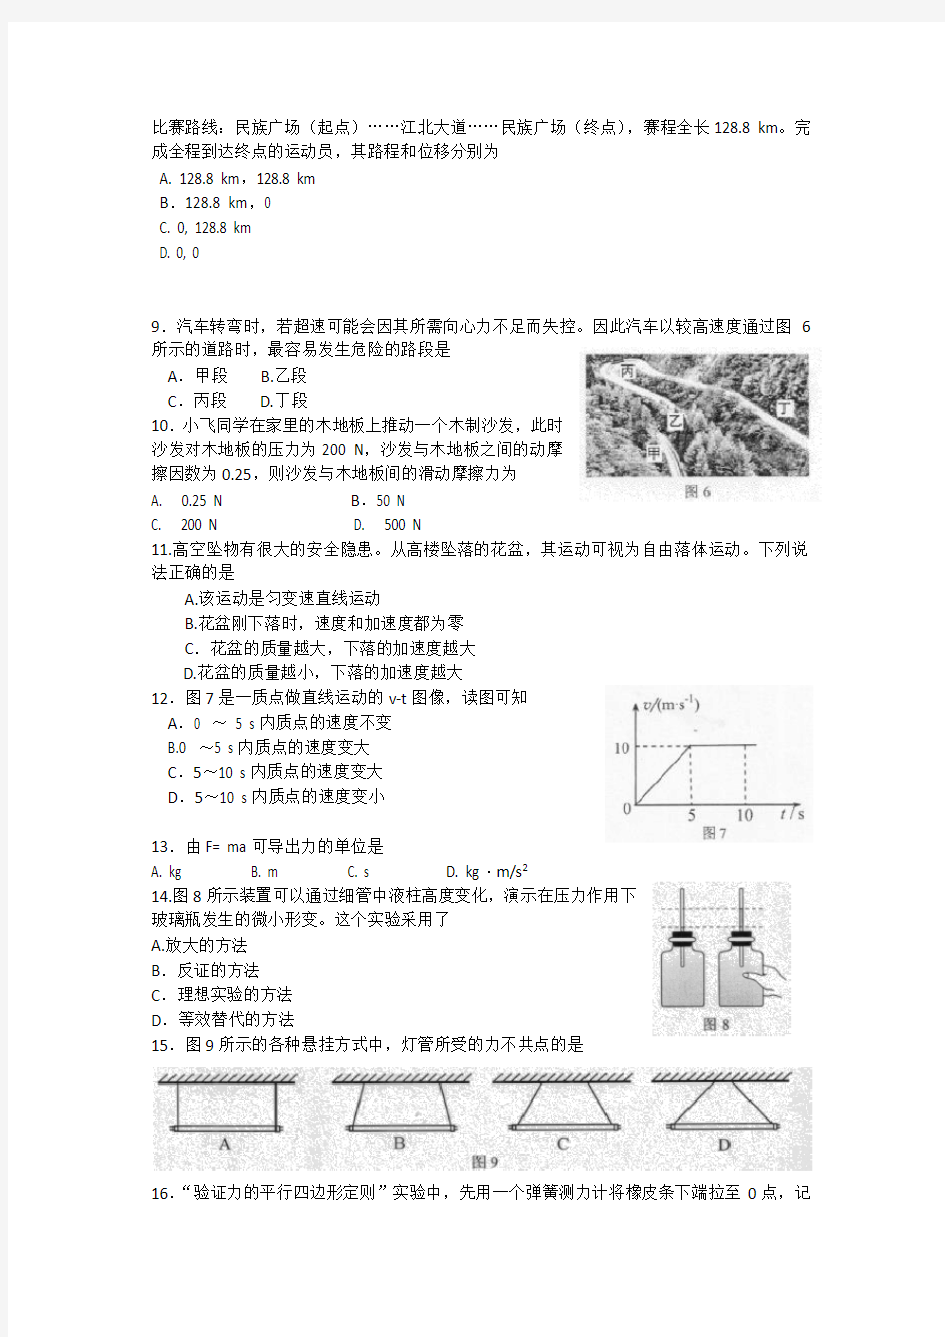 2017年12月广西壮族自治区普通高中学业水平考试物理试题(无答案)